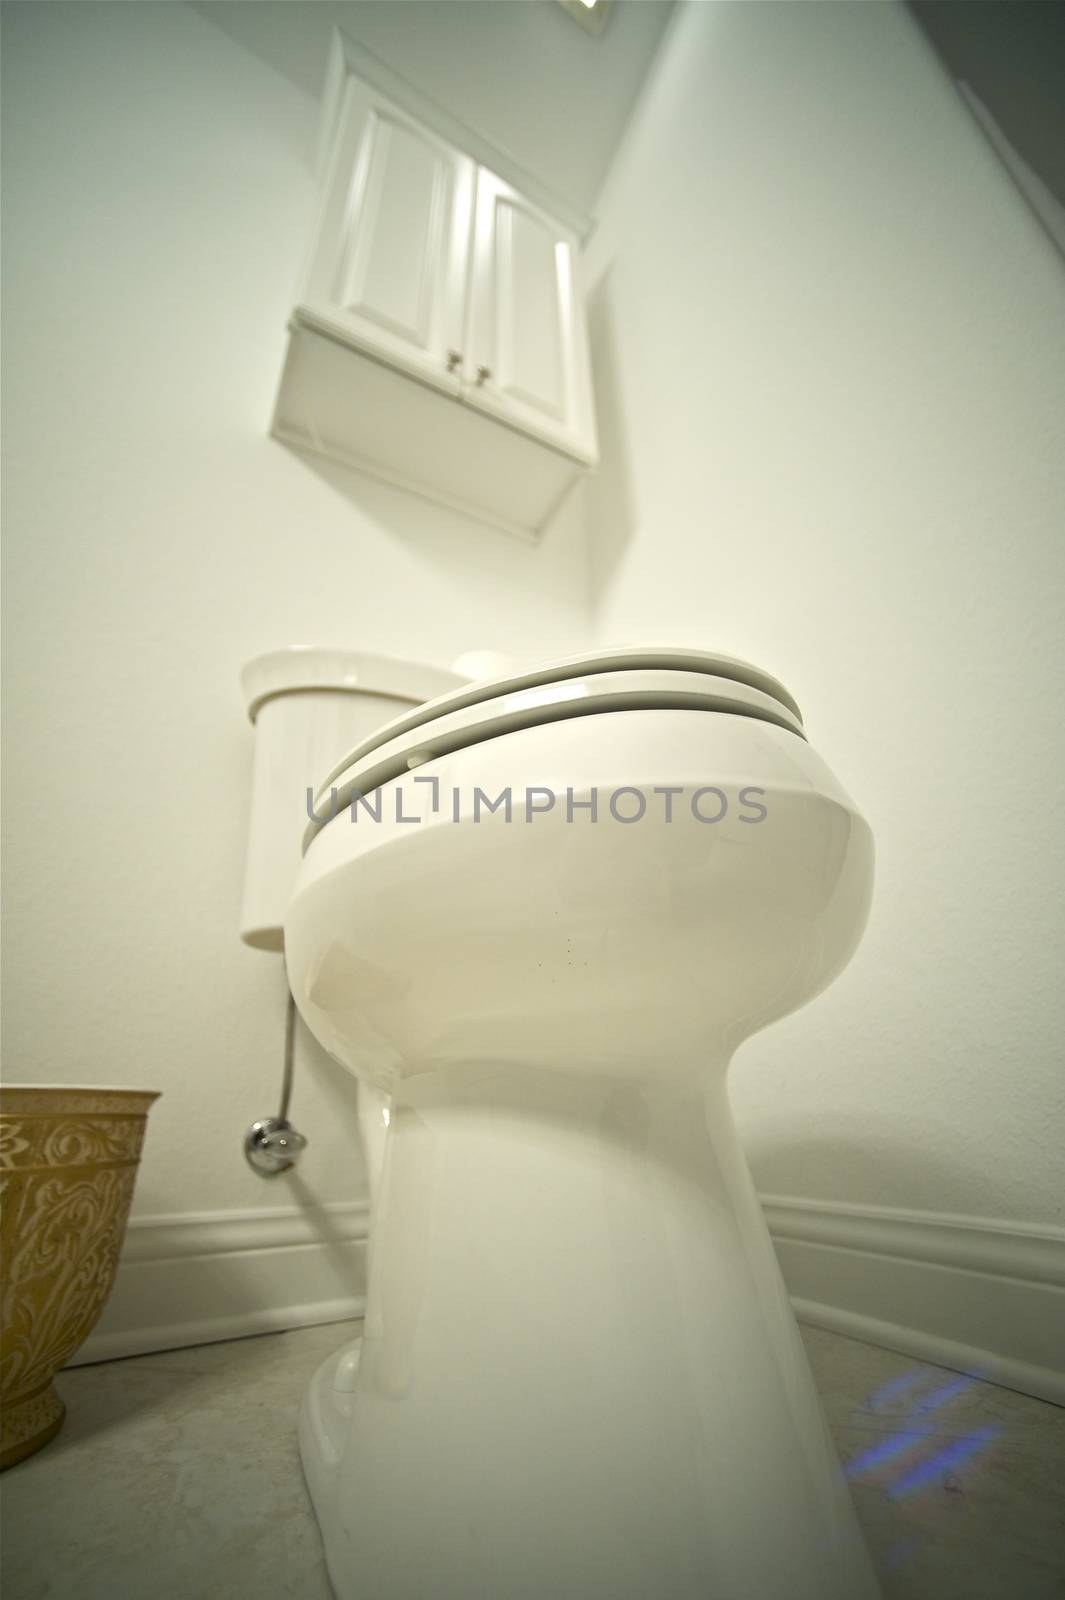 Toilet Interior - Toilet Bowl. Household.